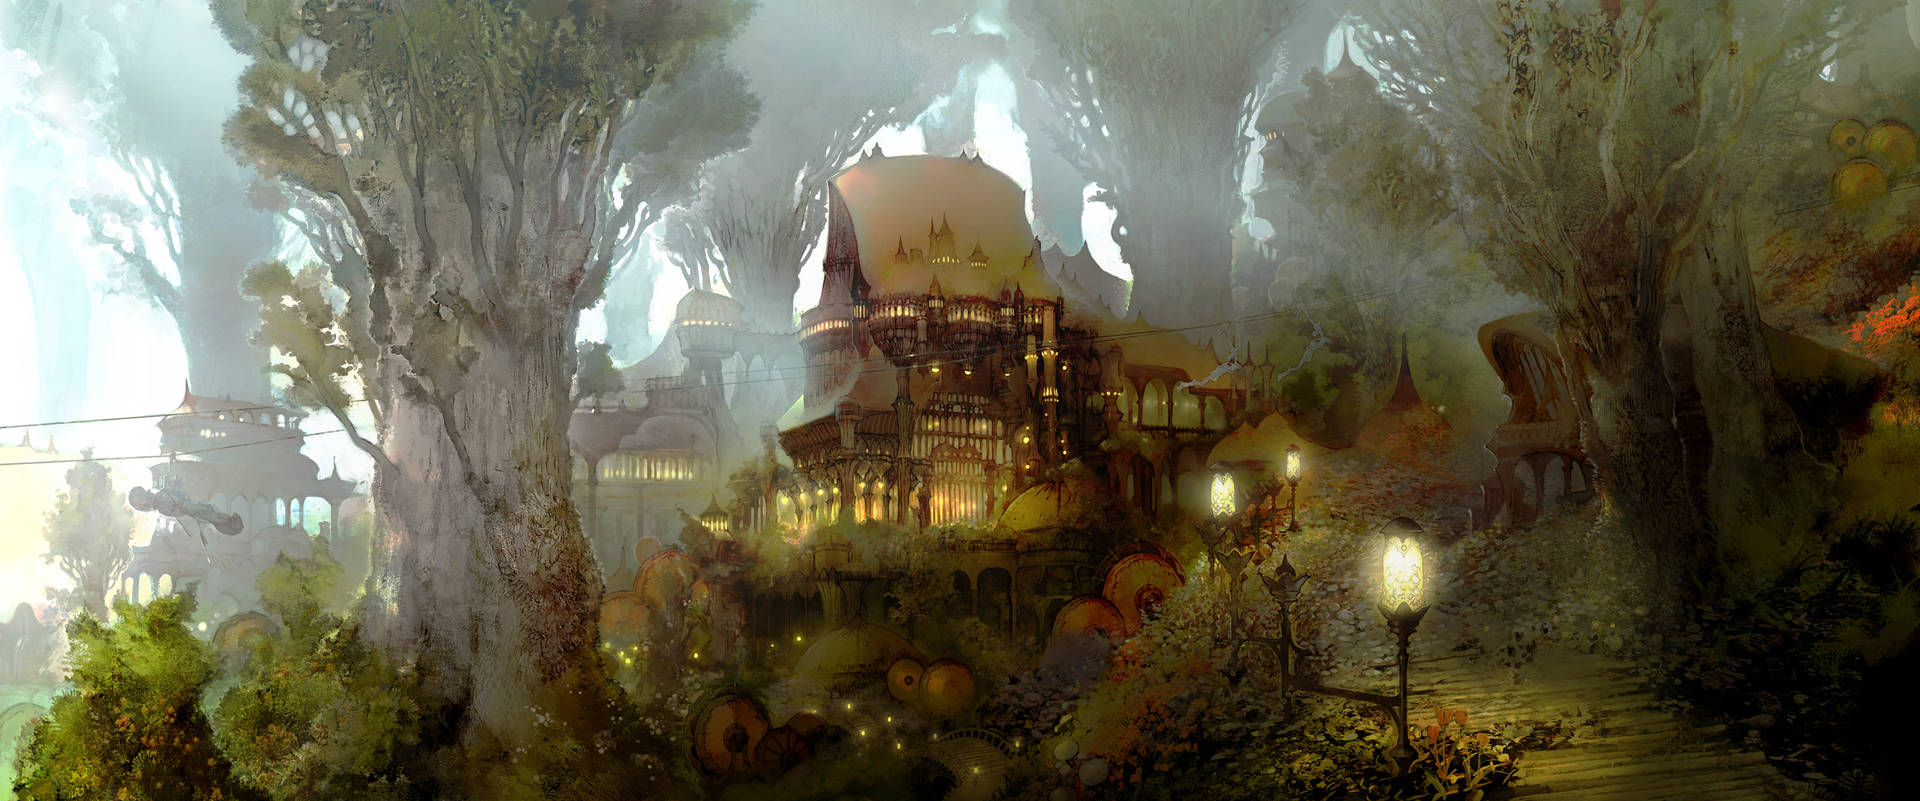 Machensie Eine Virtuelle Reise Durch Das Land Von Final Fantasy 14. Wallpaper